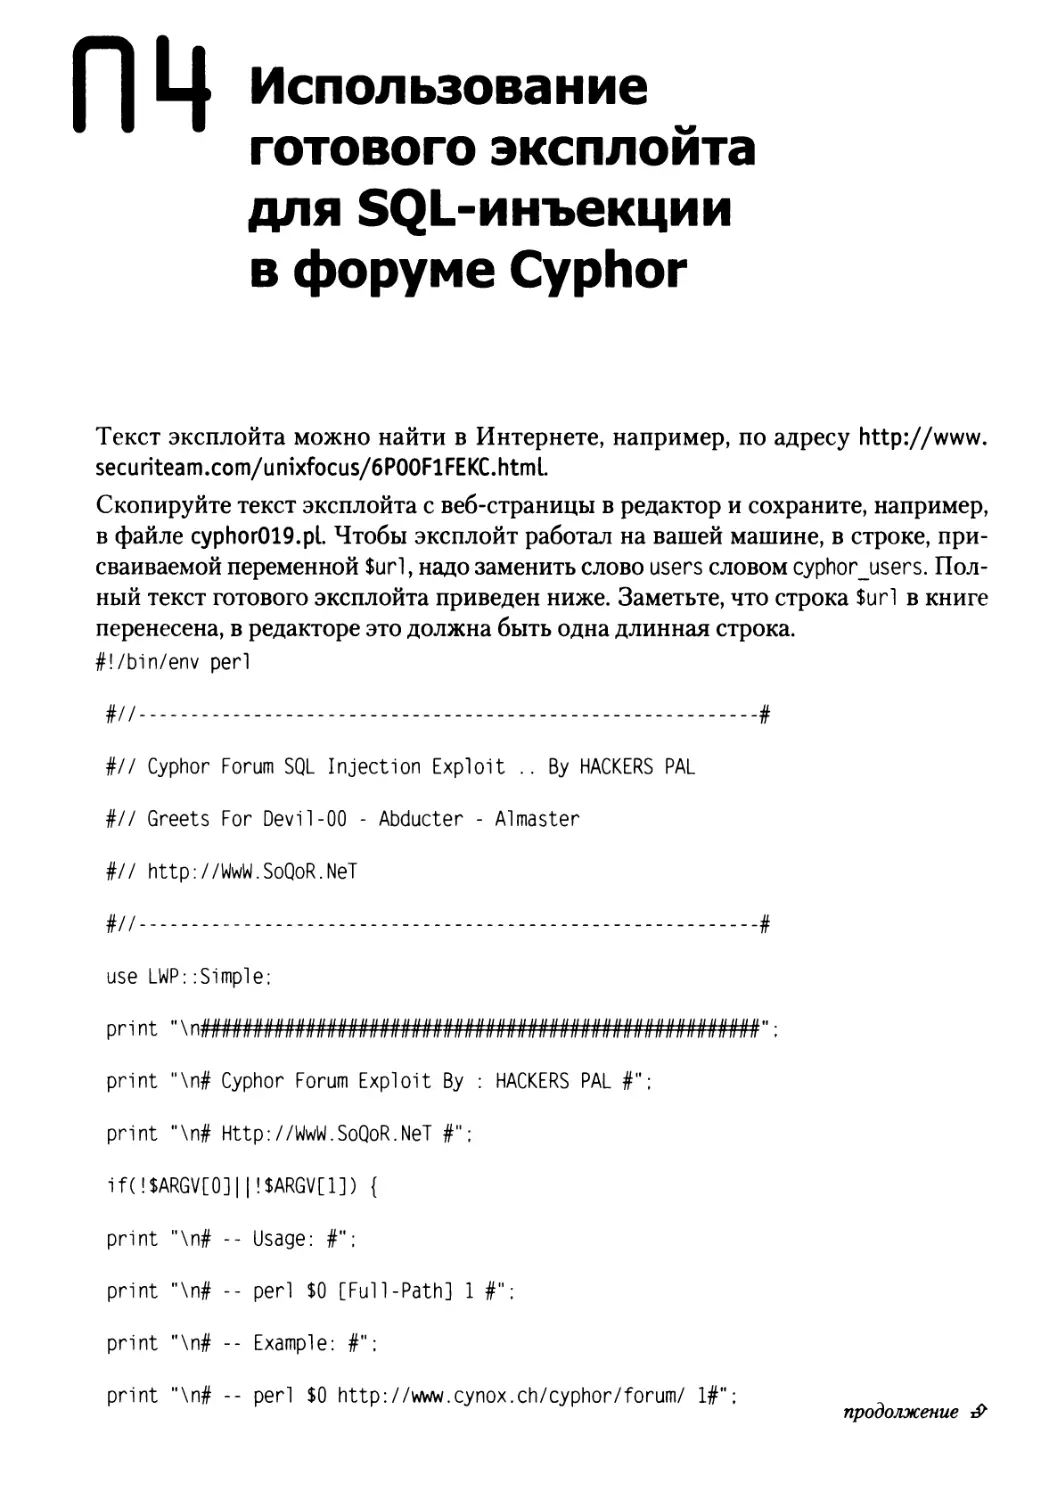 Приложение 4. Использование готового эксплойта для SQL-инъекции в форуме Cyphor